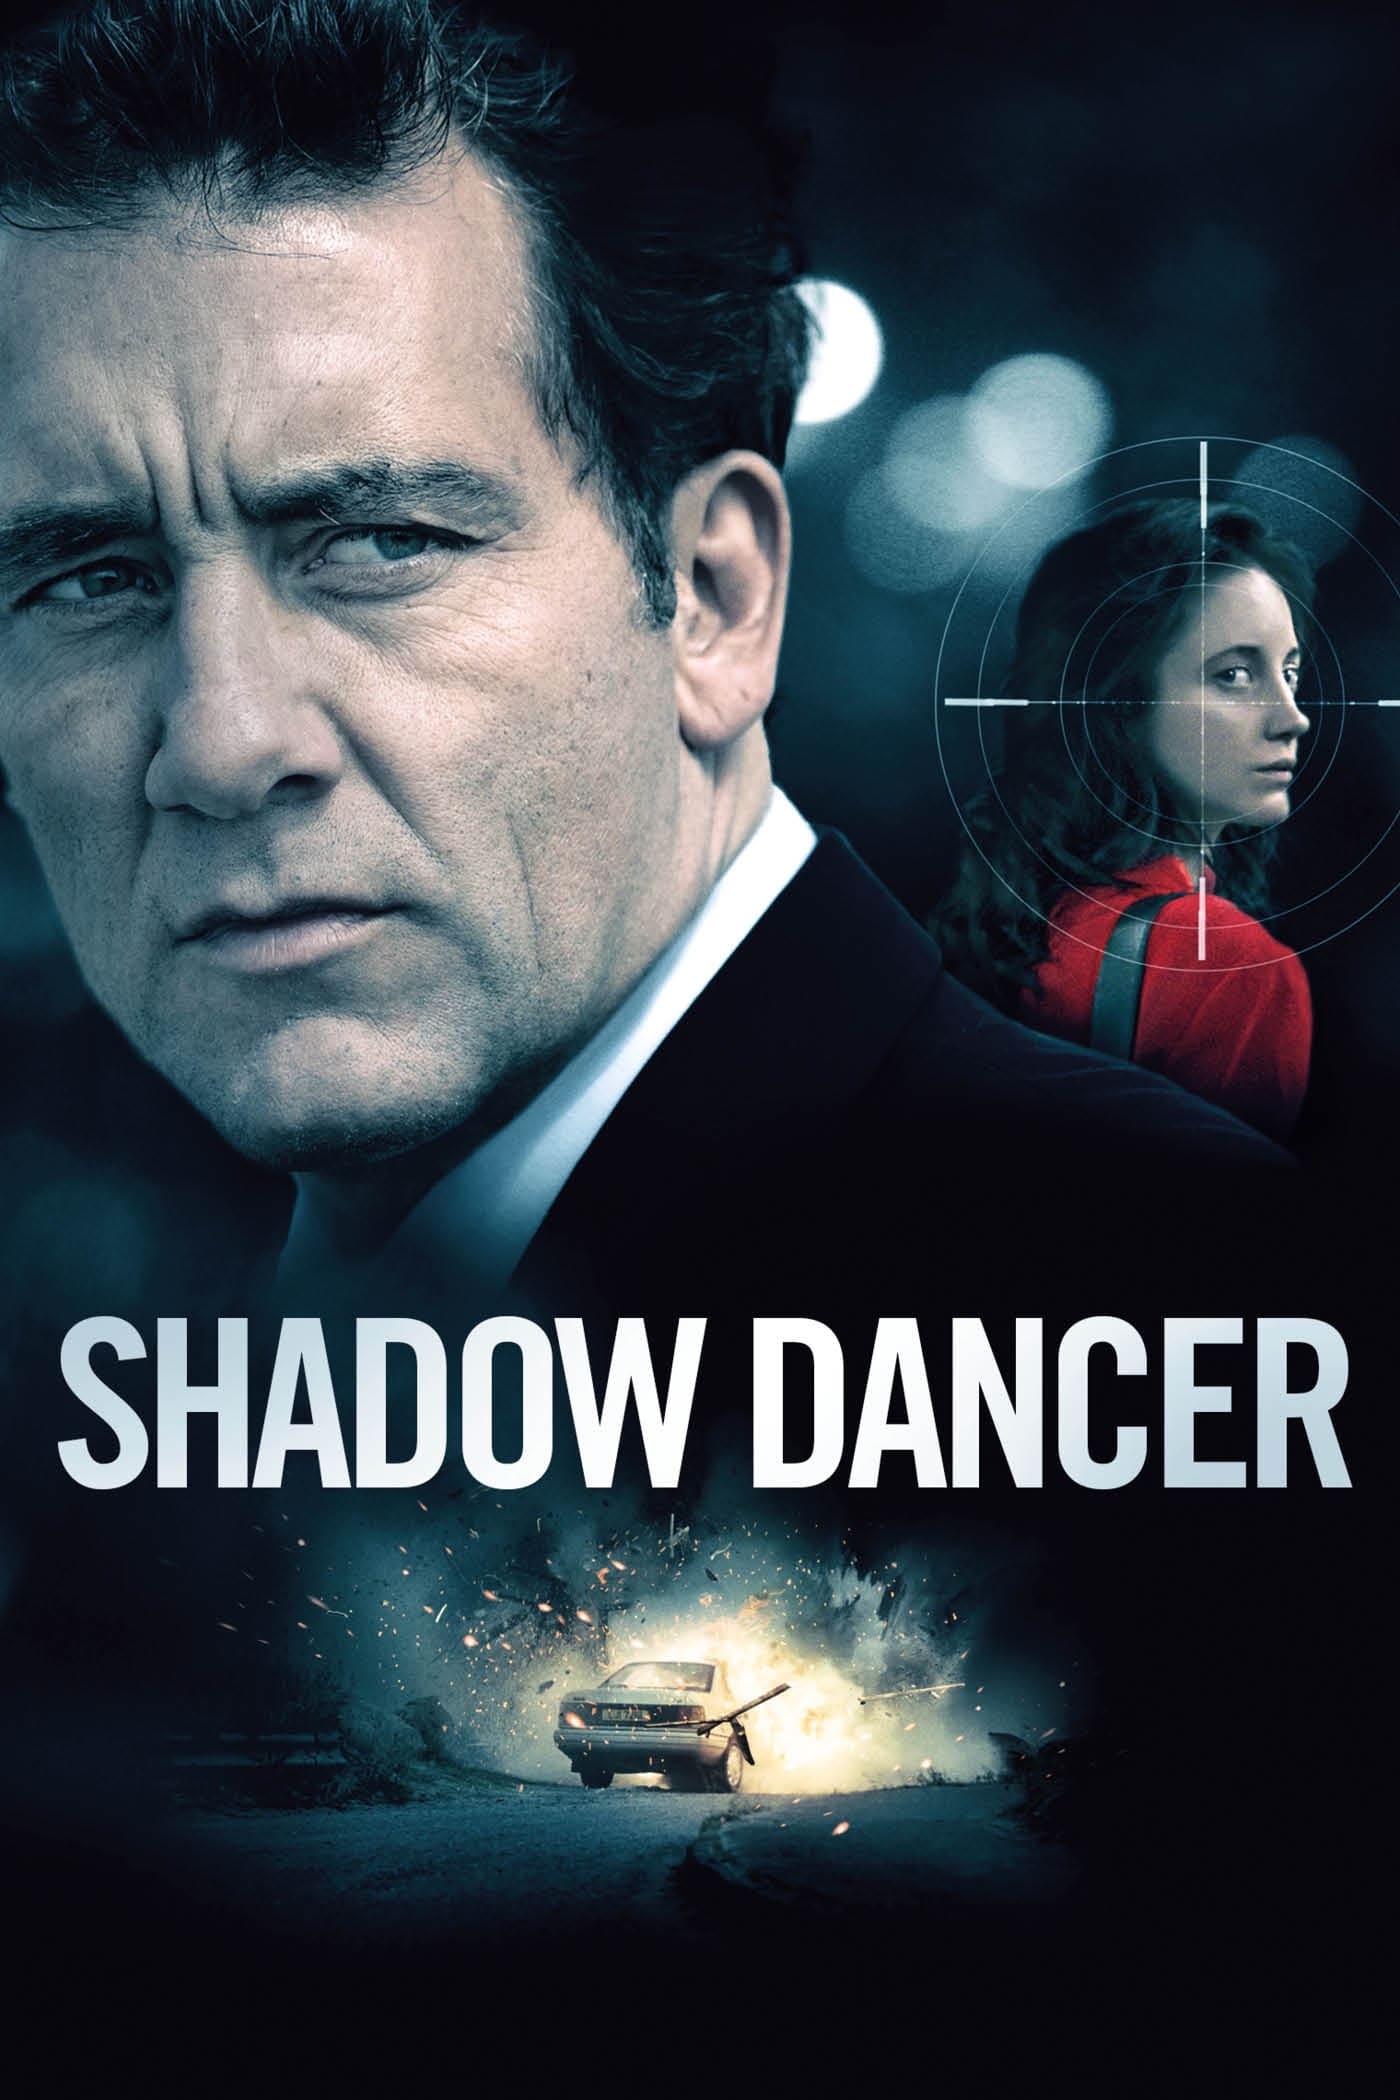 Shadow Dancer (Shadow Dancer) [2012]